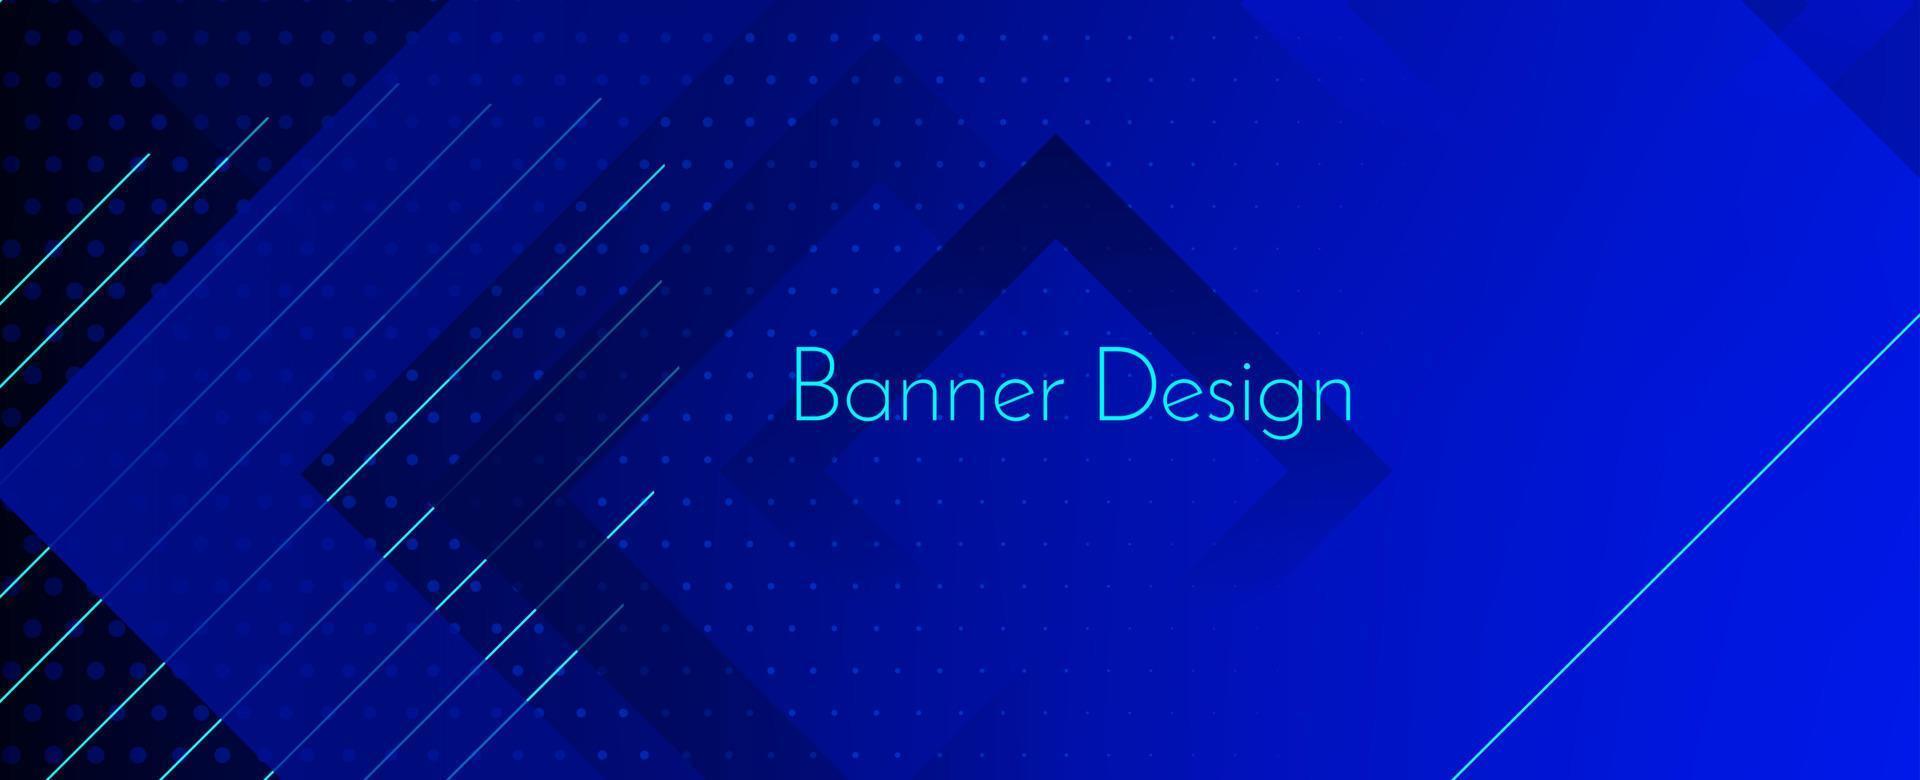 abstrato geométrico azul decorativo moderno banner design plano de fundo vetor